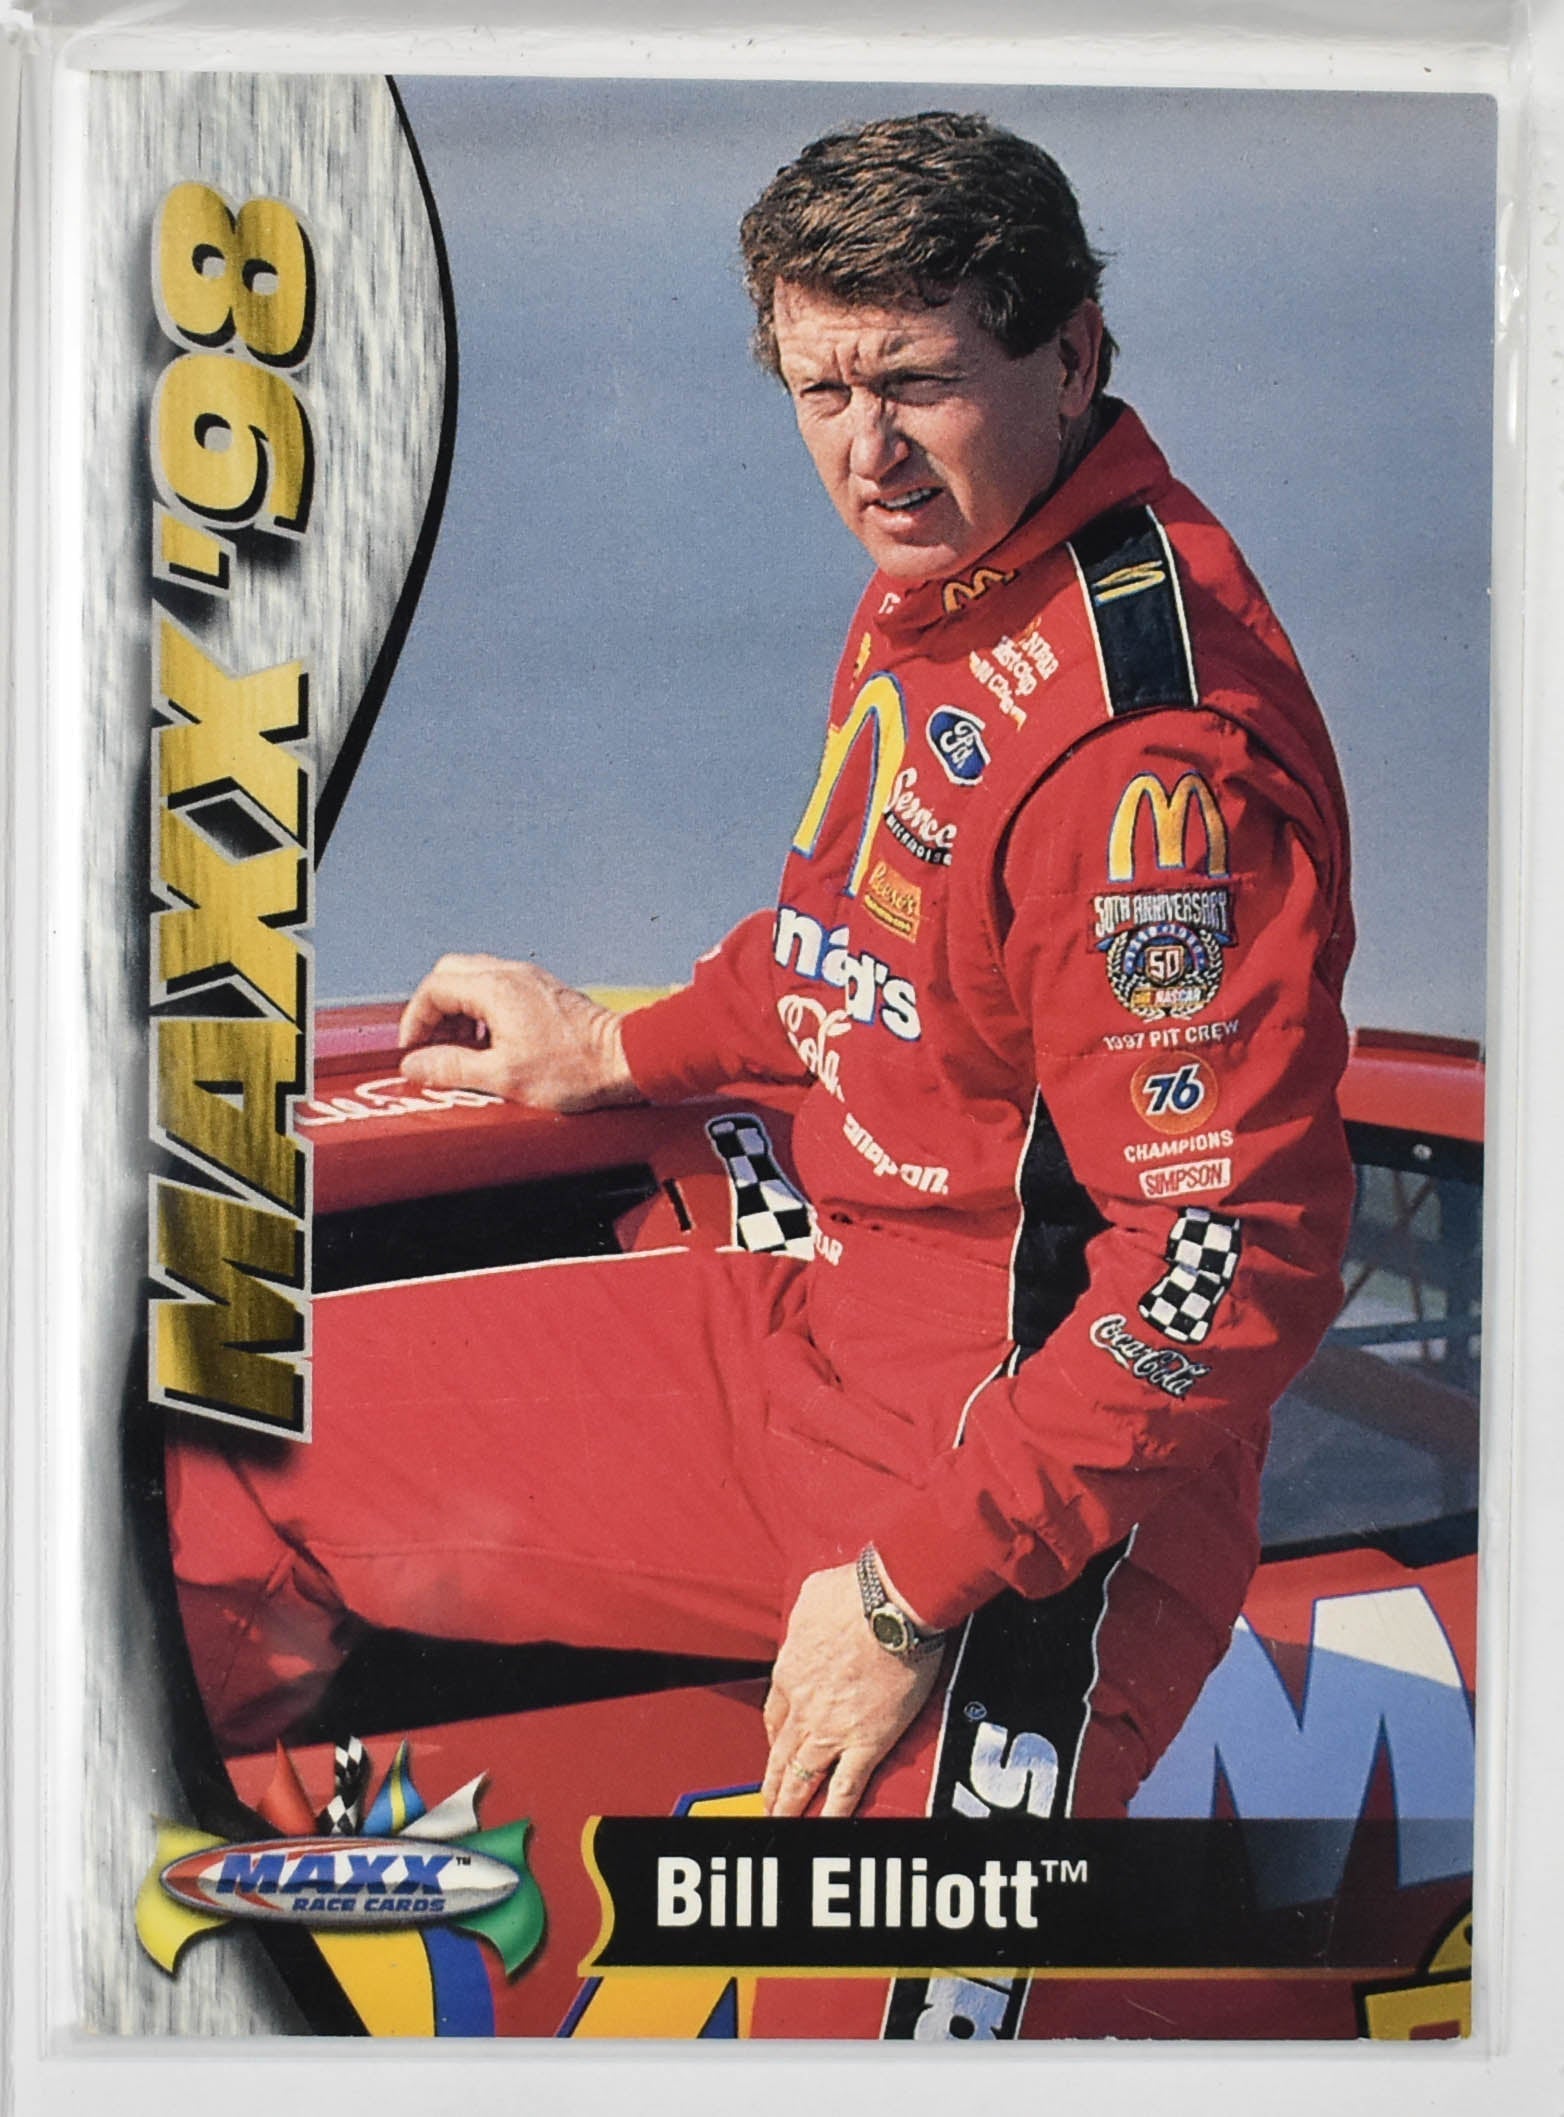 Bill Elliott 15 Maxx Race Cards 1998 Nascar Card